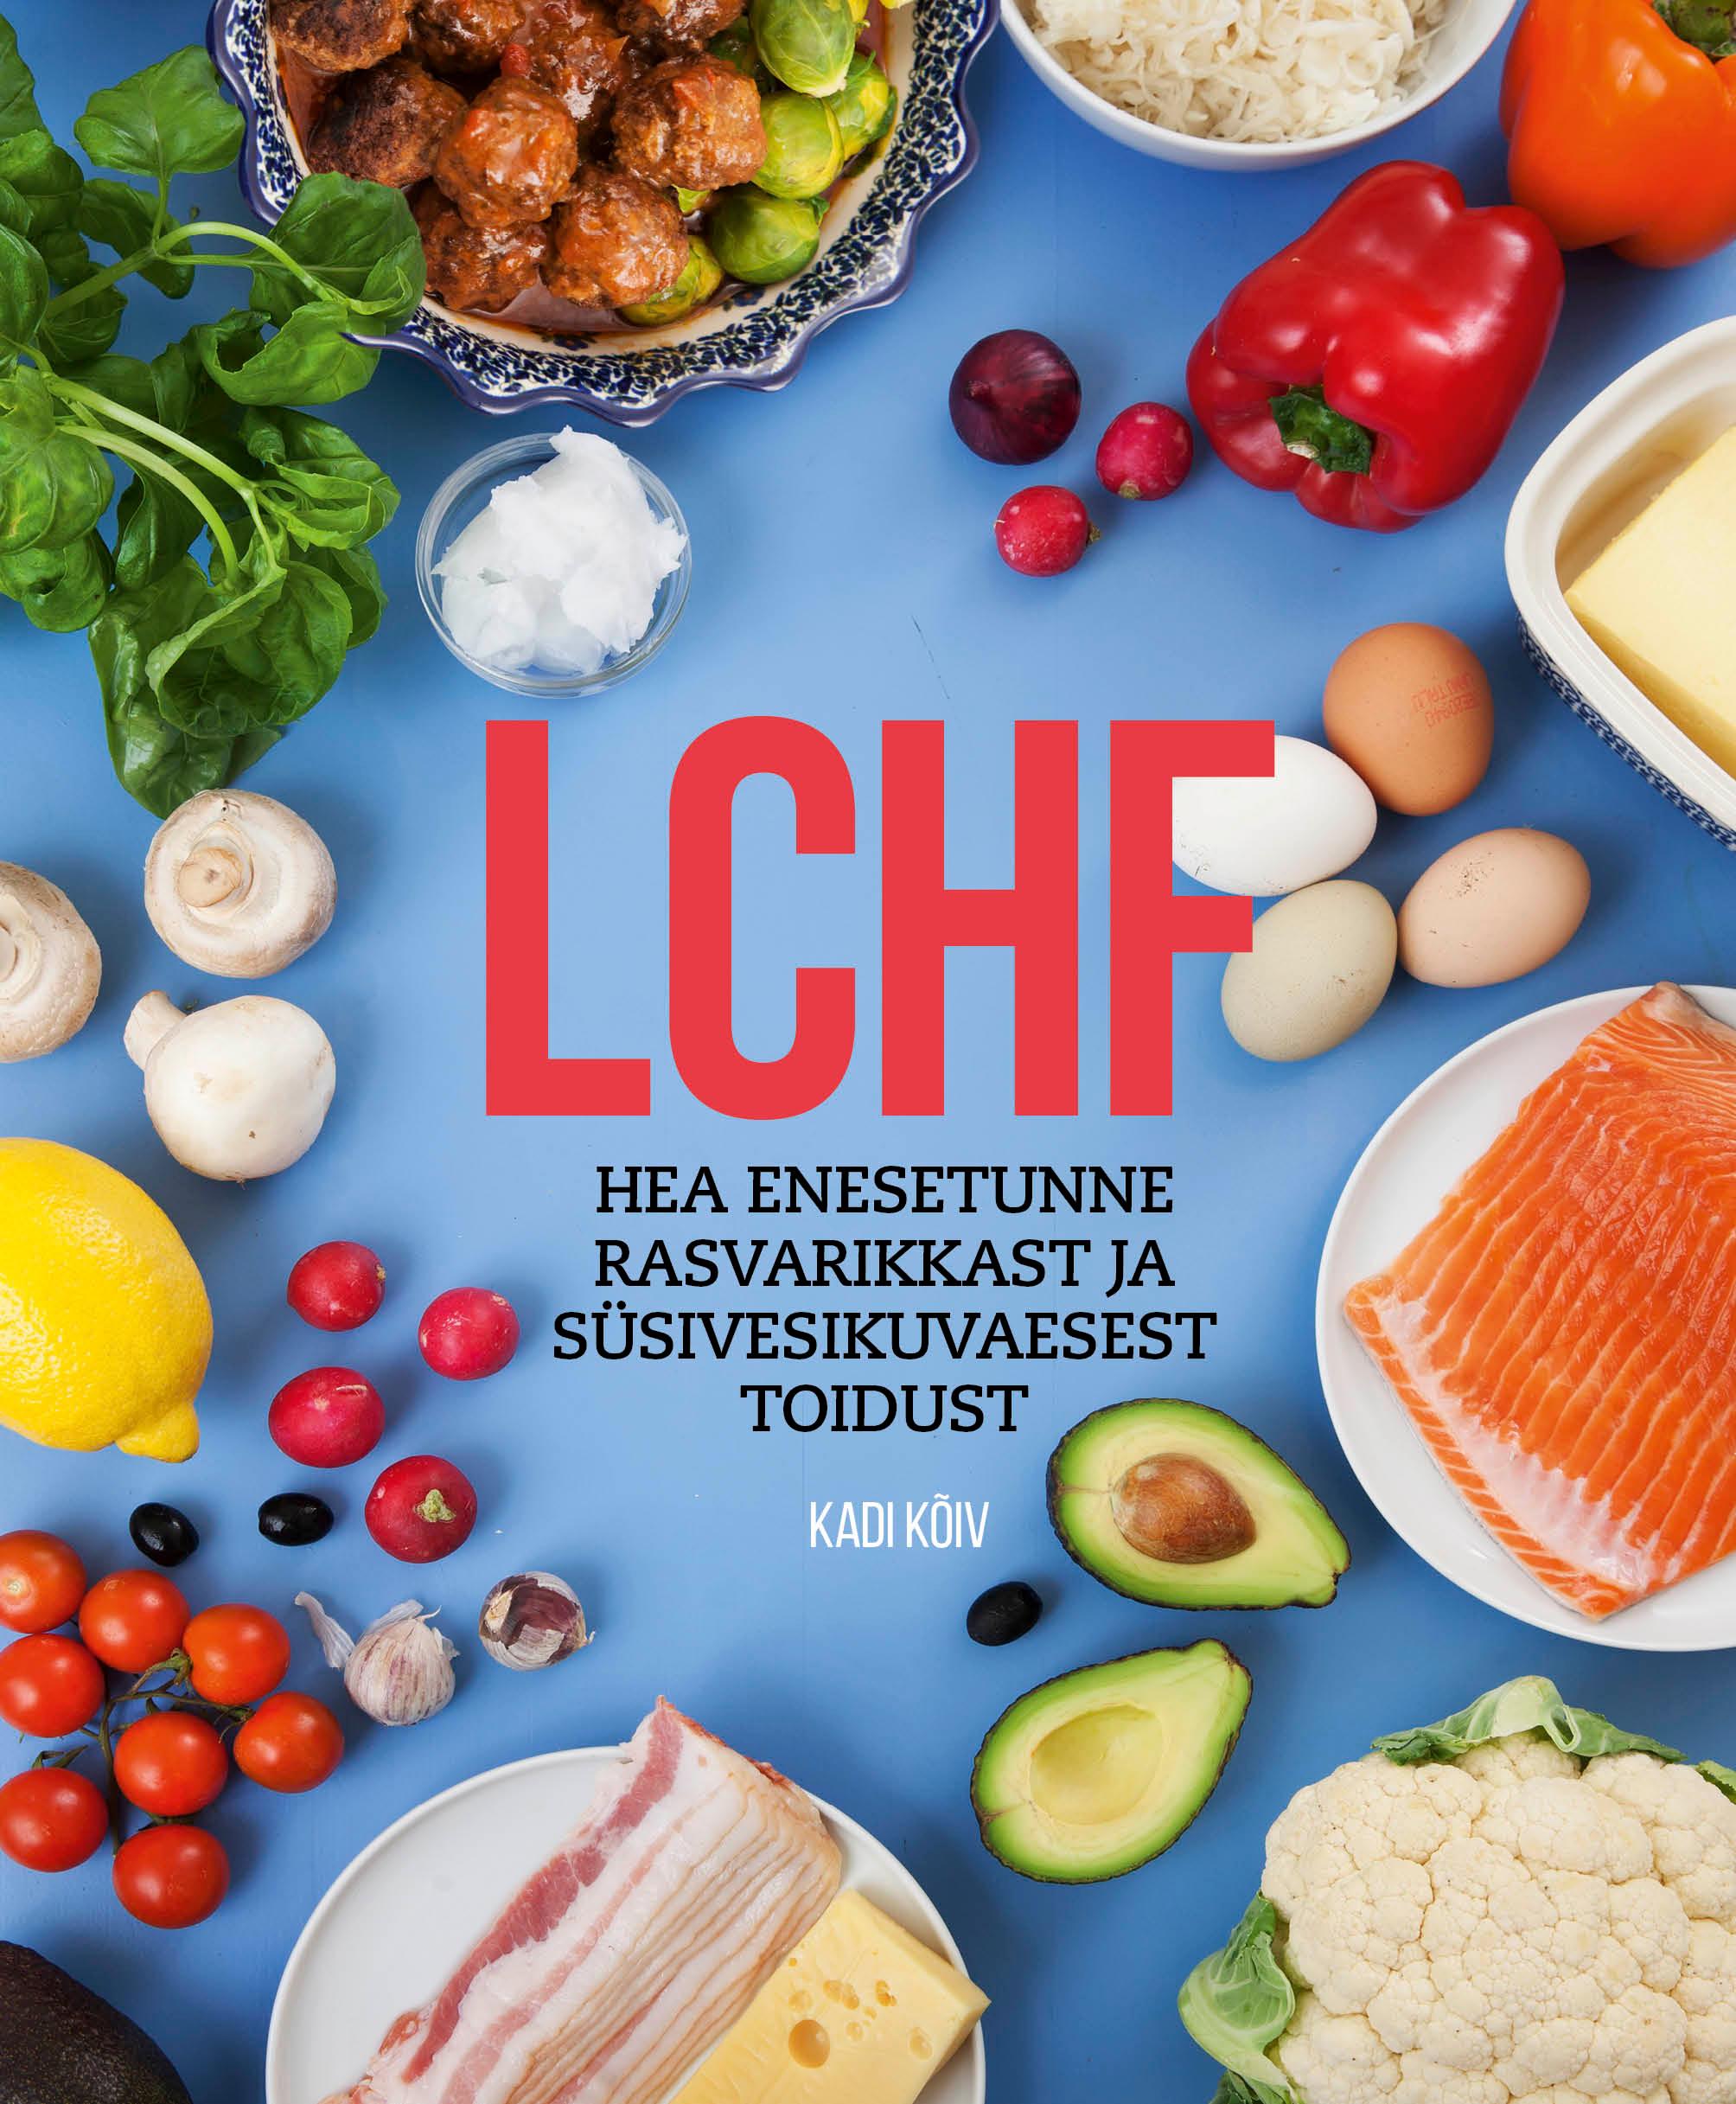 LCHF. Hea enesetunne rasvarikkast ja süsivesikuvaesest toidust